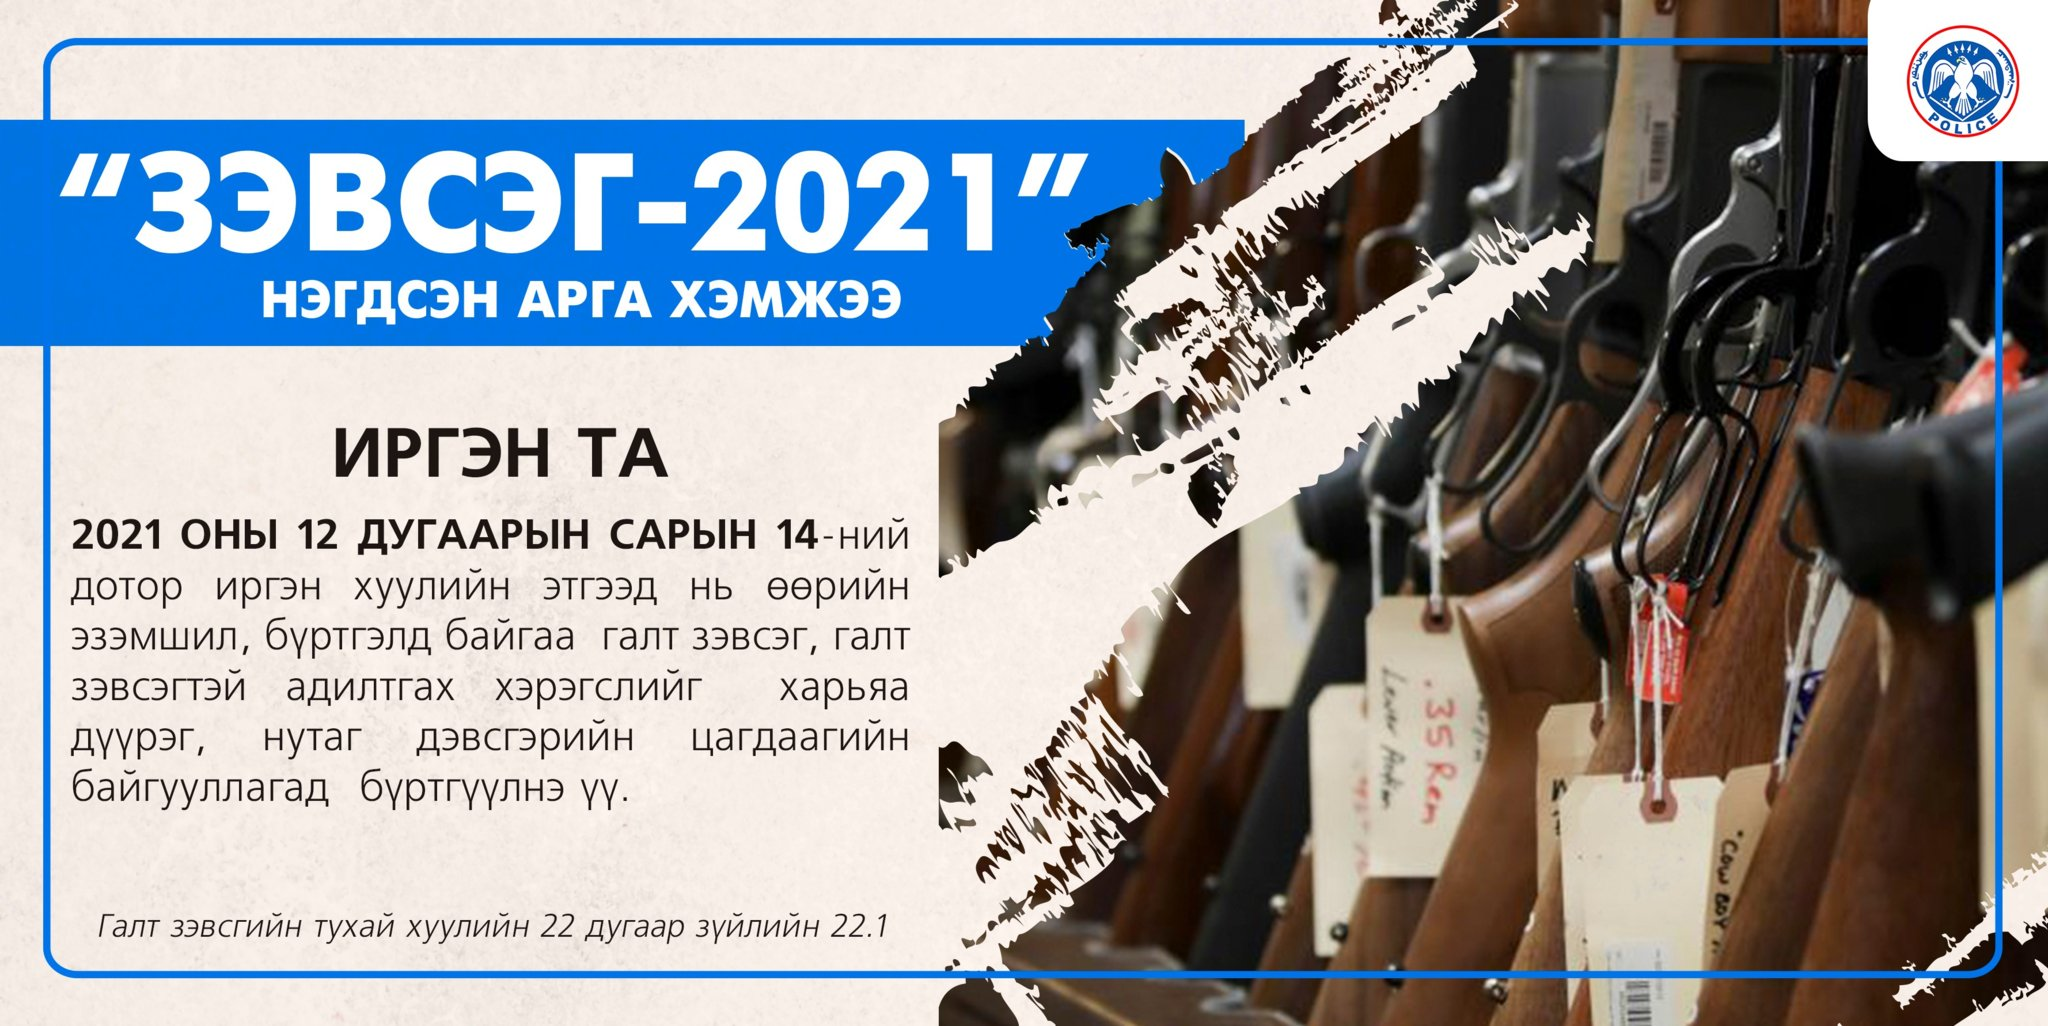 "ЗЭВСЭГ-2021"